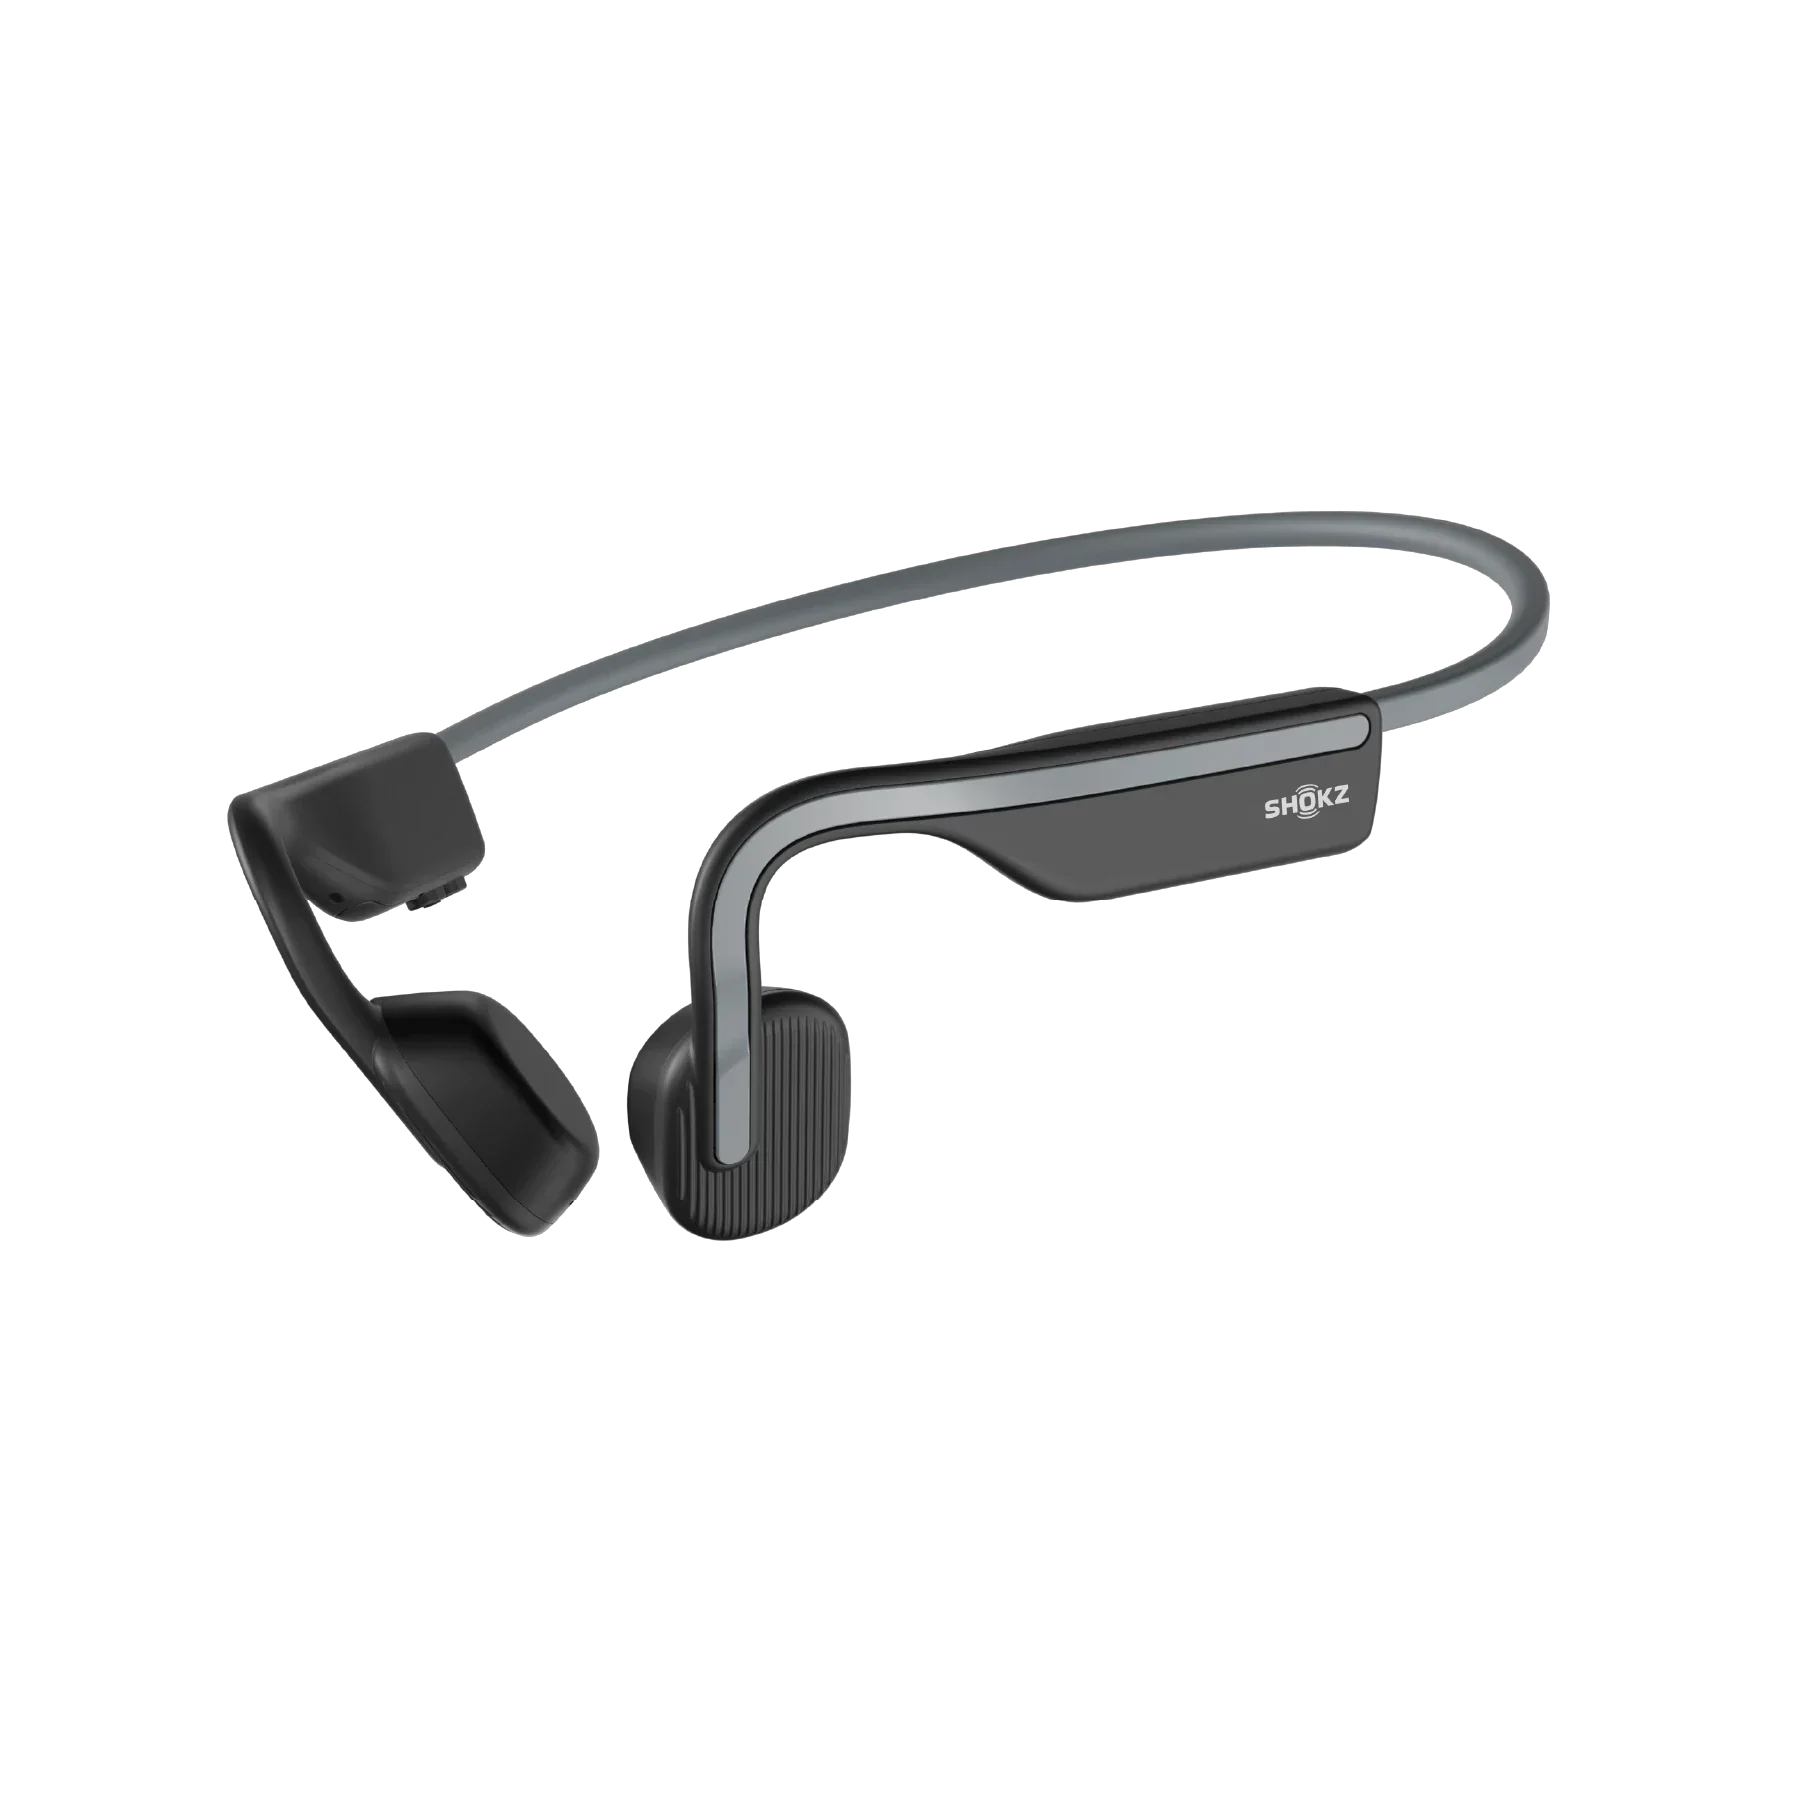 Auriculares Bluetooth con control de comando de voz, auricular Bluetooth  V5.0 con micrófono de cancelación de ruido y 13 horas de reproducción para